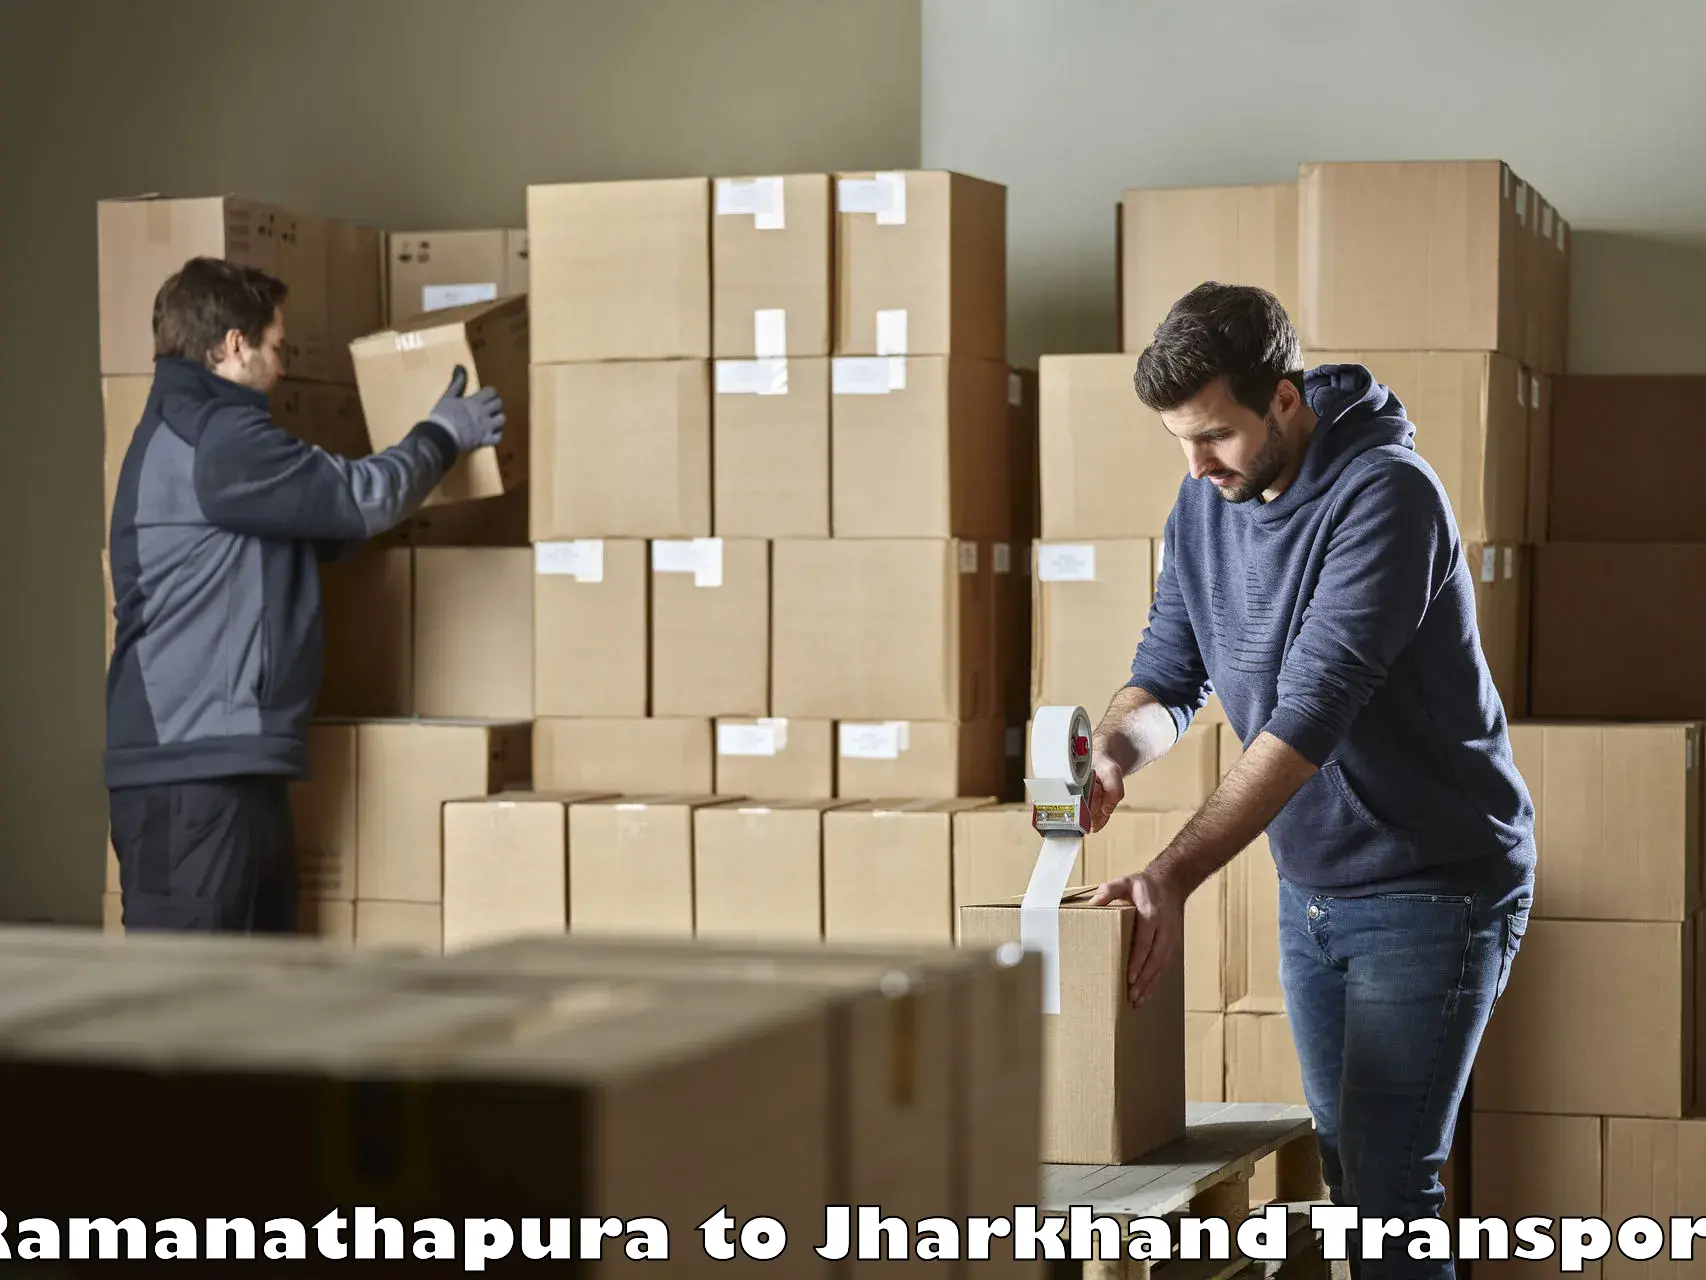 Online transport service Ramanathapura to Rajmahal